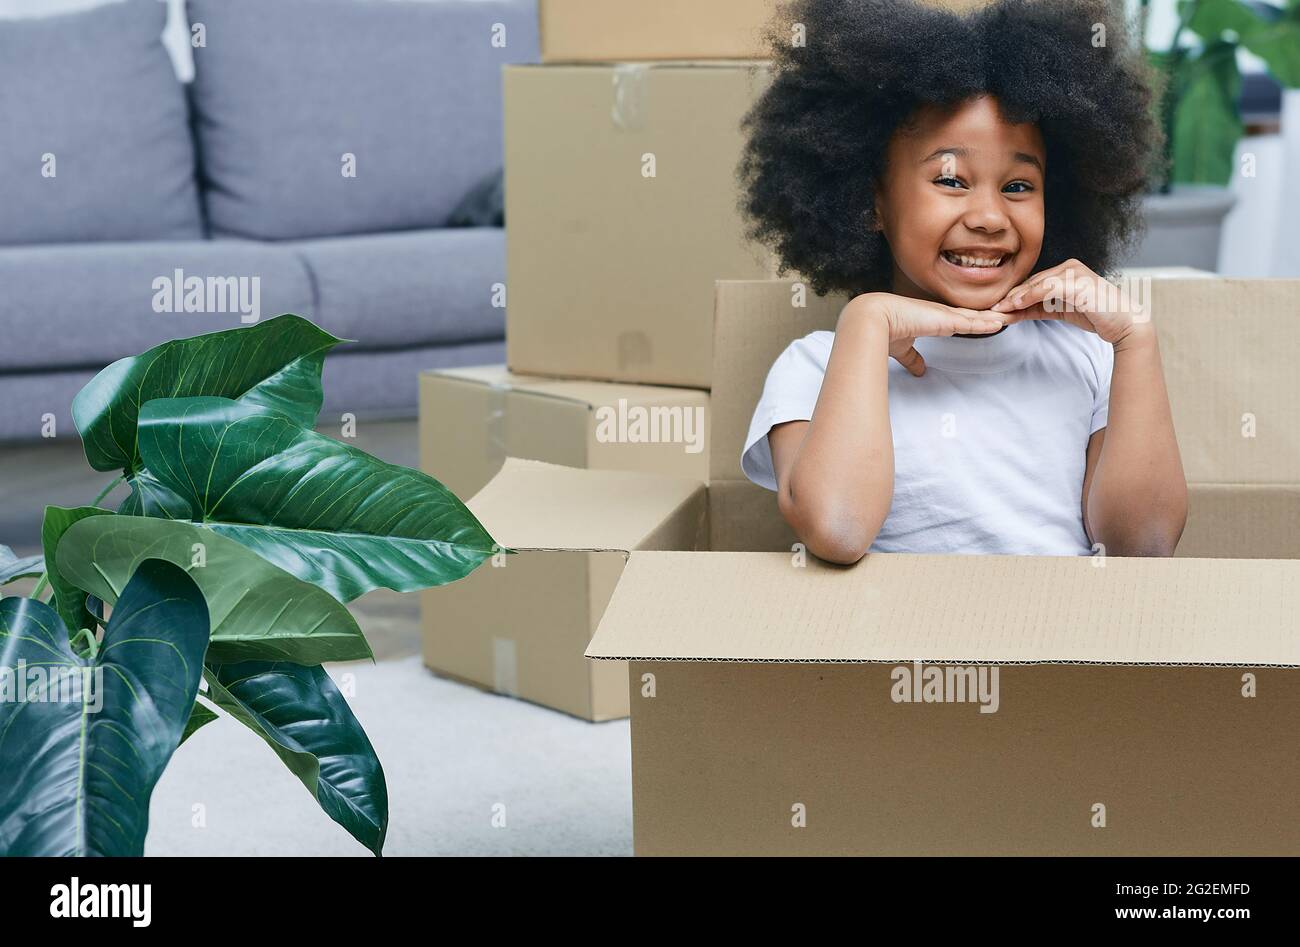 Bonne petite fille africaine américaine jouant avec des boîtes en carton, s'amusant tout en se déplaçant à la maison Banque D'Images